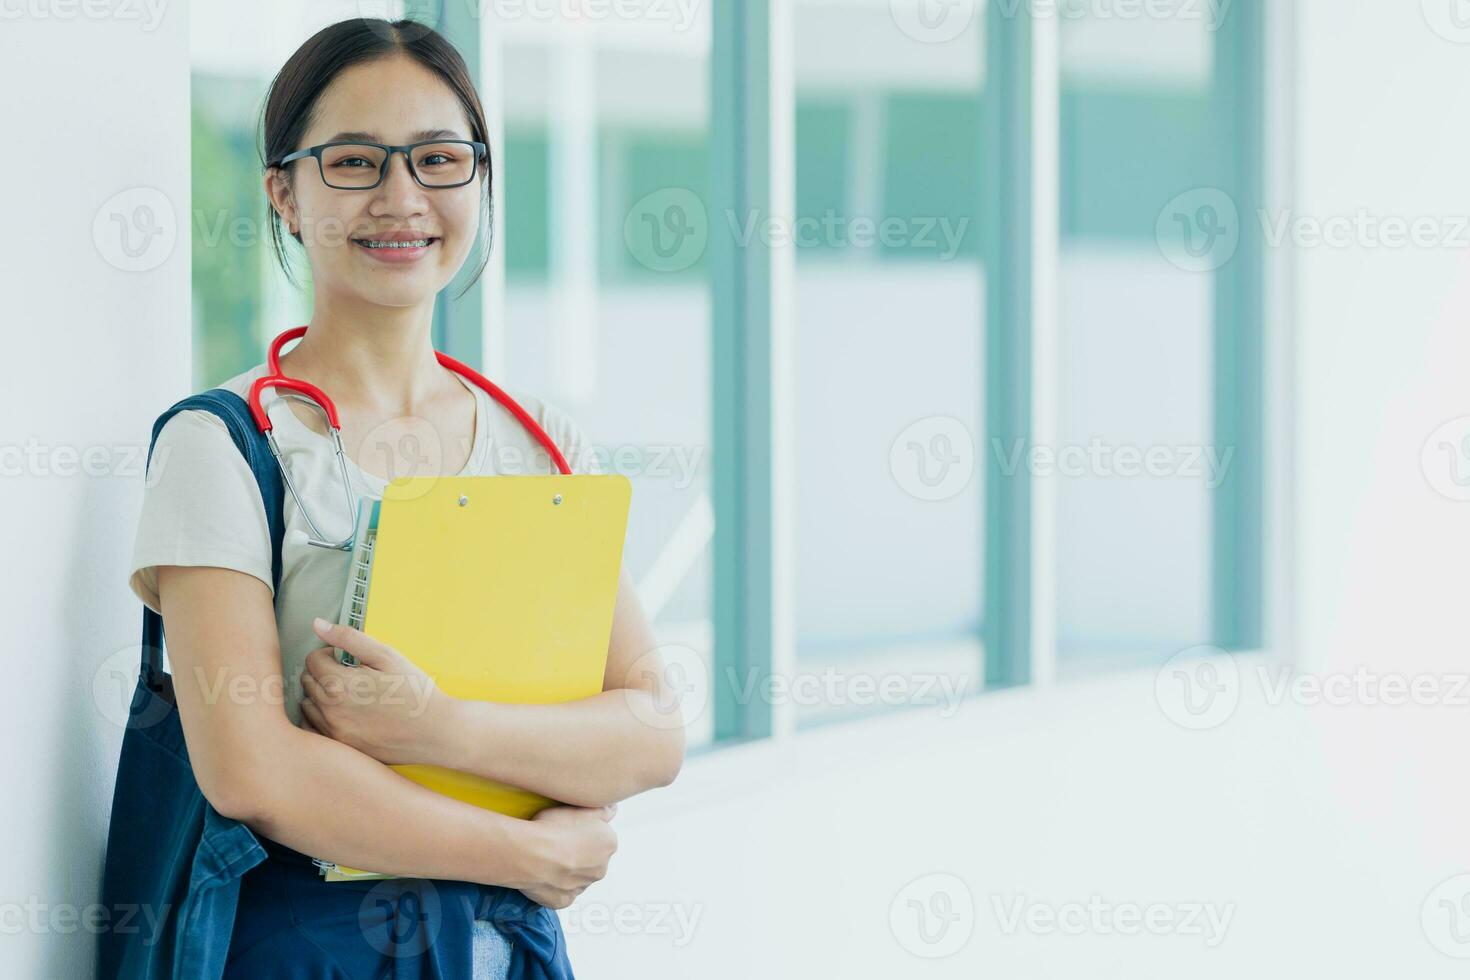 contento médico médico Universidad adolescente niña estudiante en colegio instalaciones disfrutar estudiar educación asiático mujer. foto